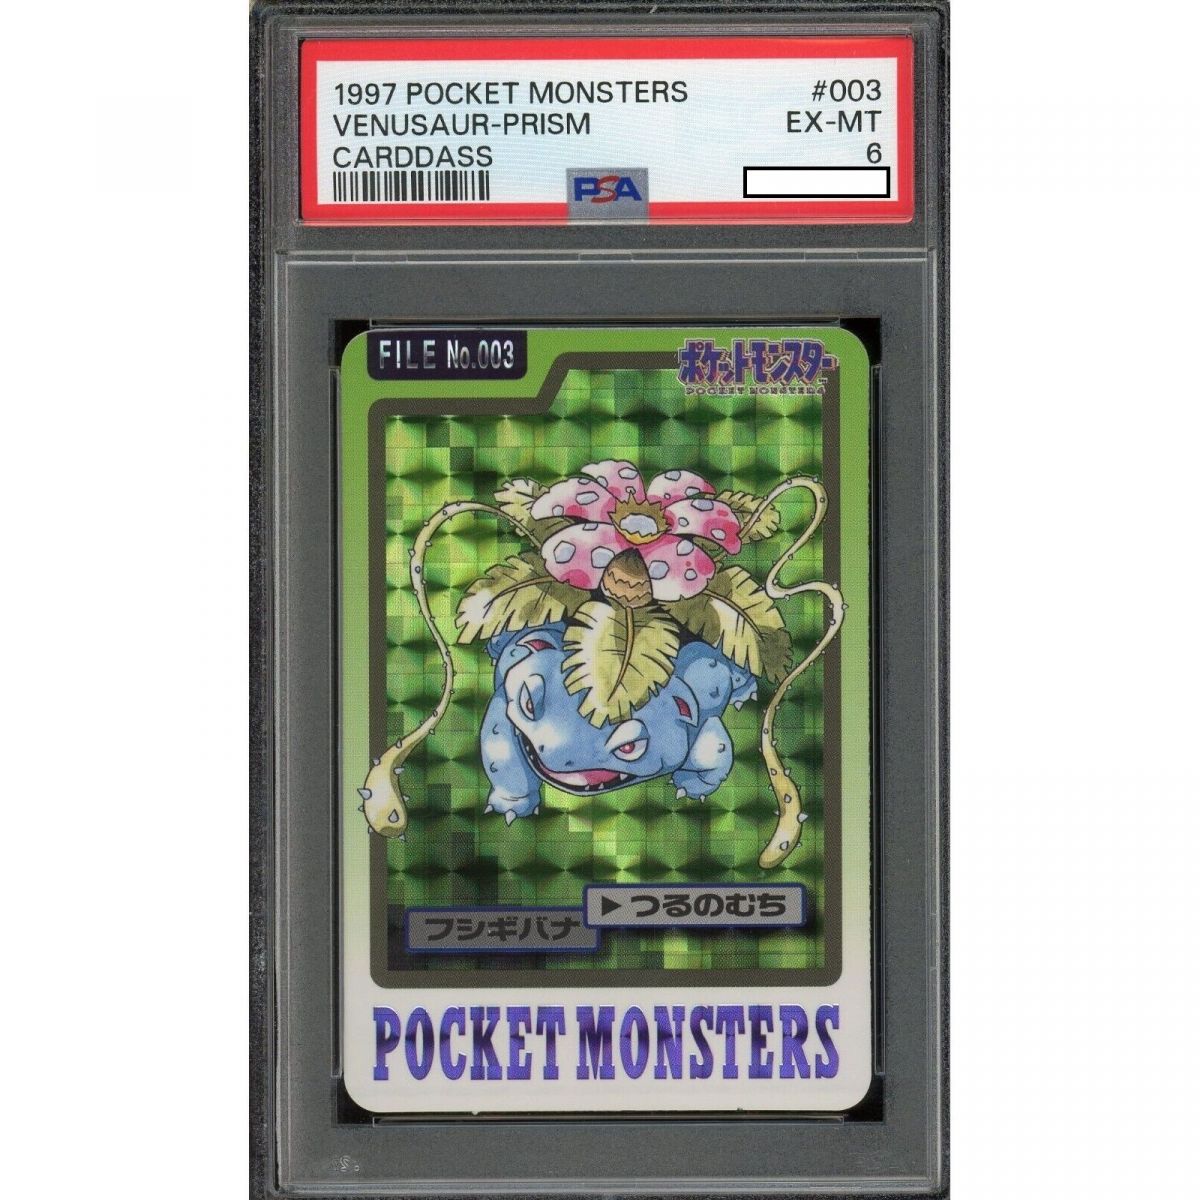 Pokémon - Graded Card - Venusaur 003 Prism Pocket Monster Carddass 1997 Japanese [PSA 6 - EX-MT]